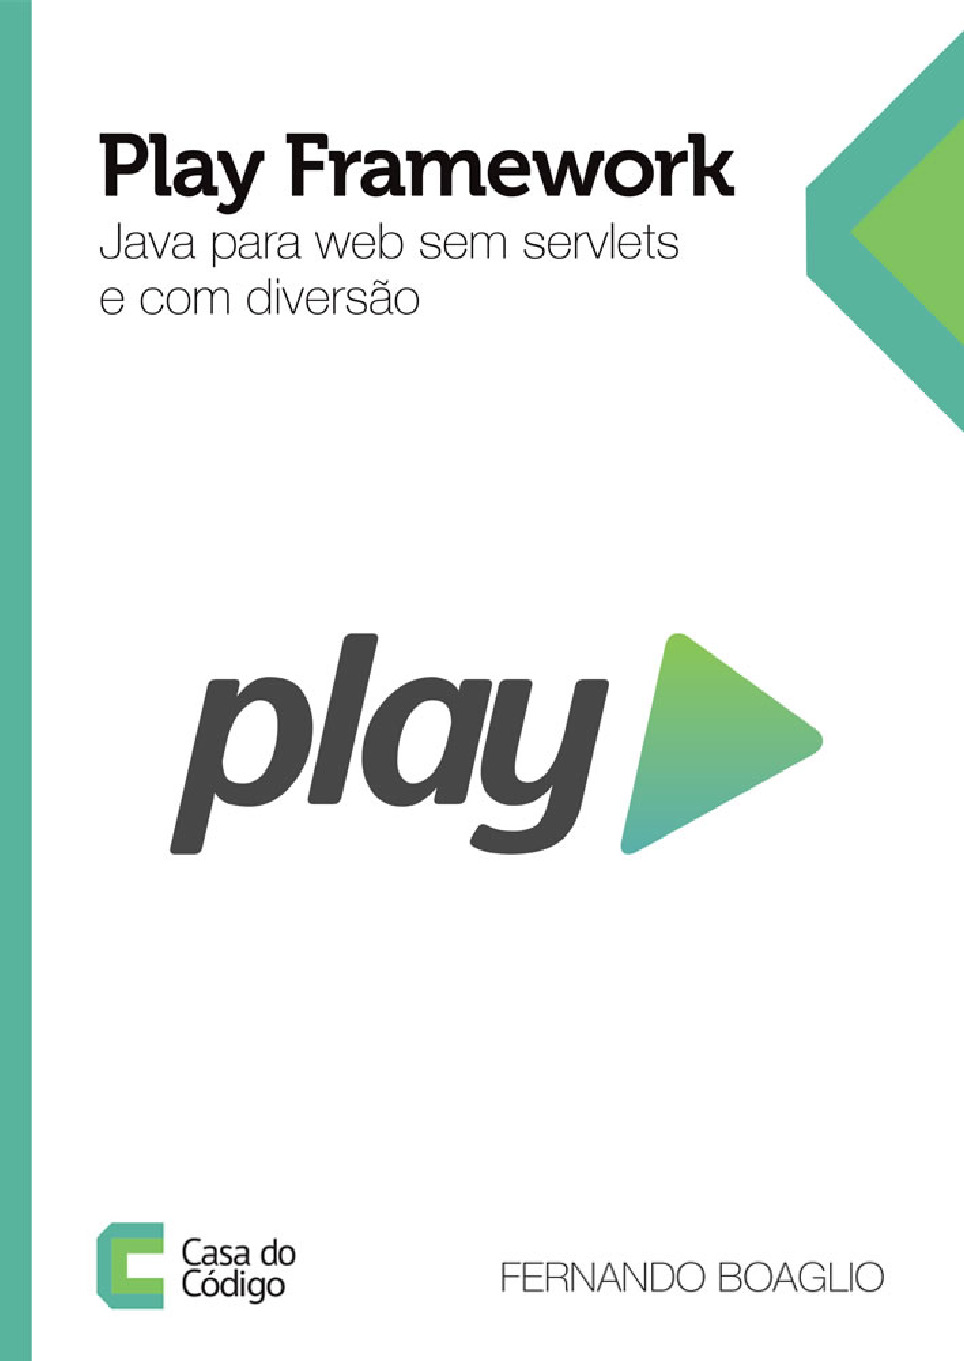 Play Framework – Java para web sem servlets e com diversao – Casa do Codigo